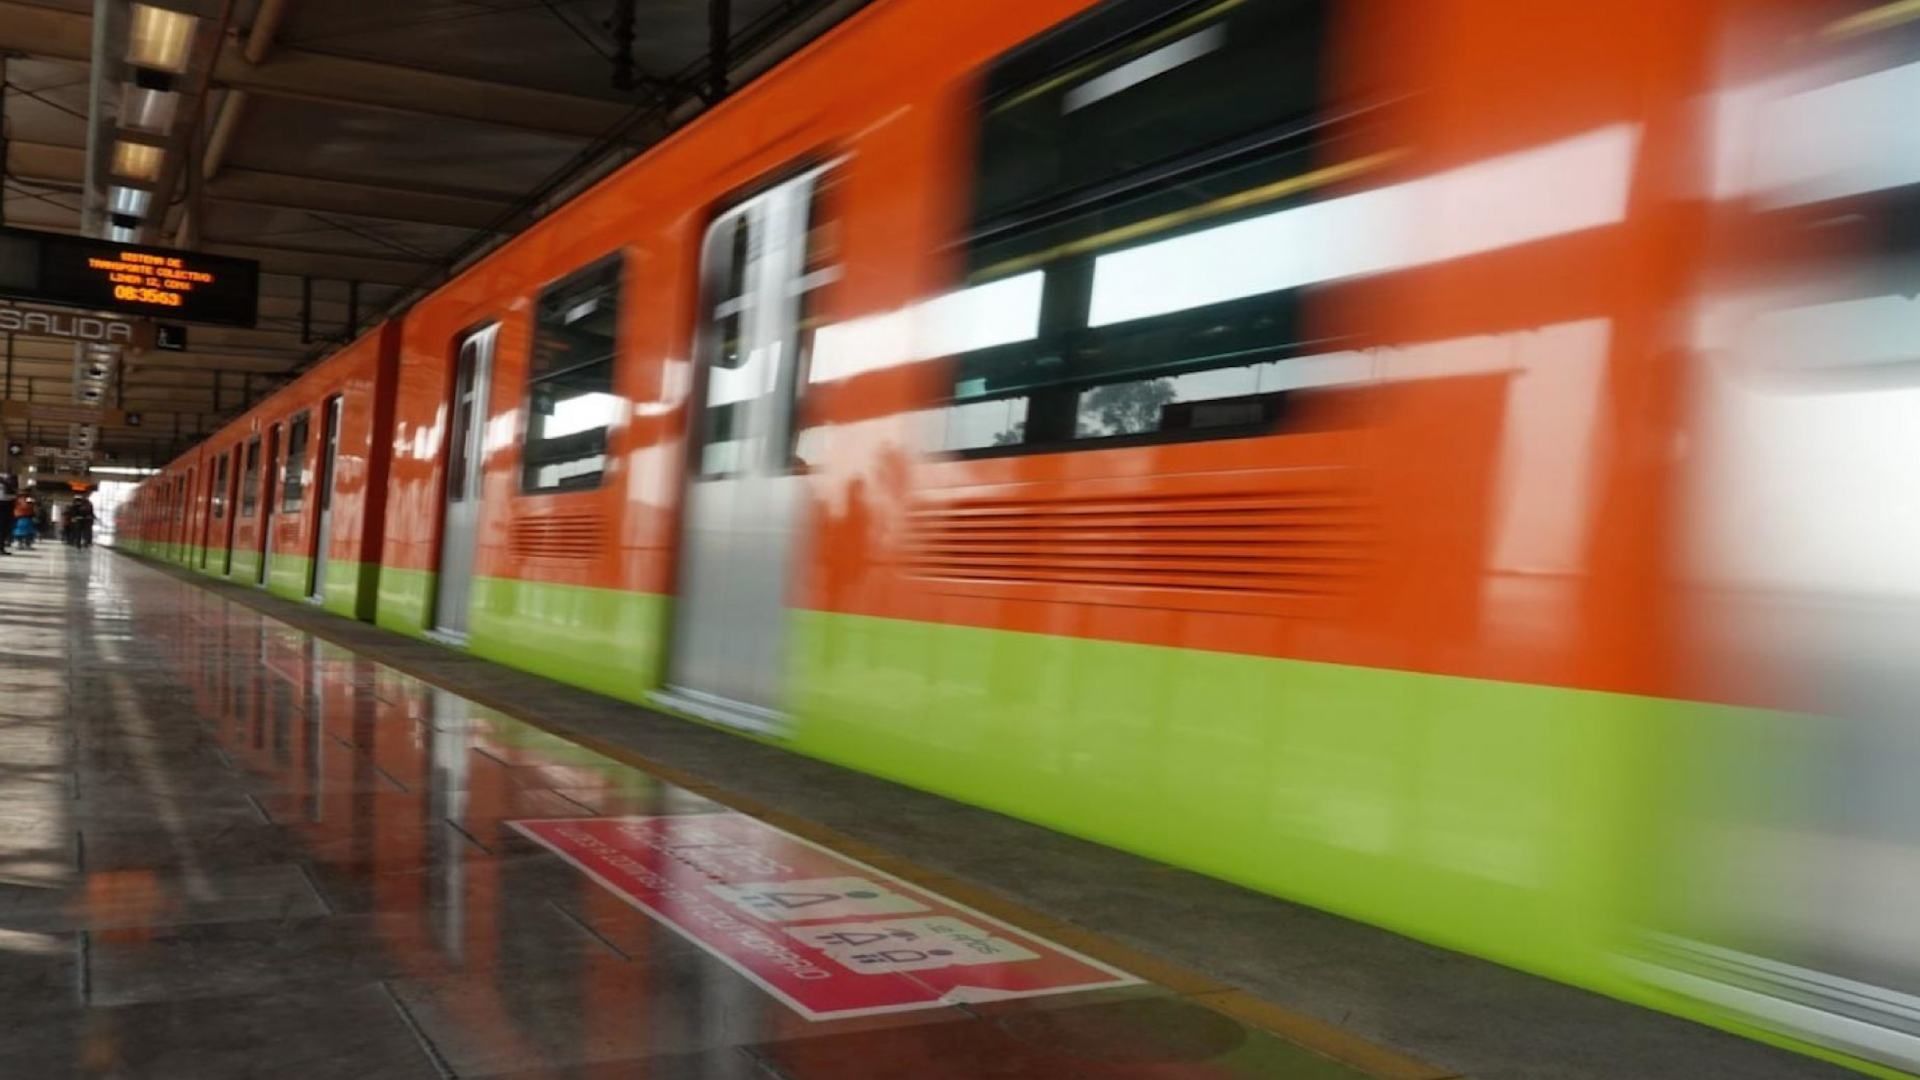 Señalan a 8 Personas por Mancha en Vagón del Metro de L12; Habría Manipulación de Documentos